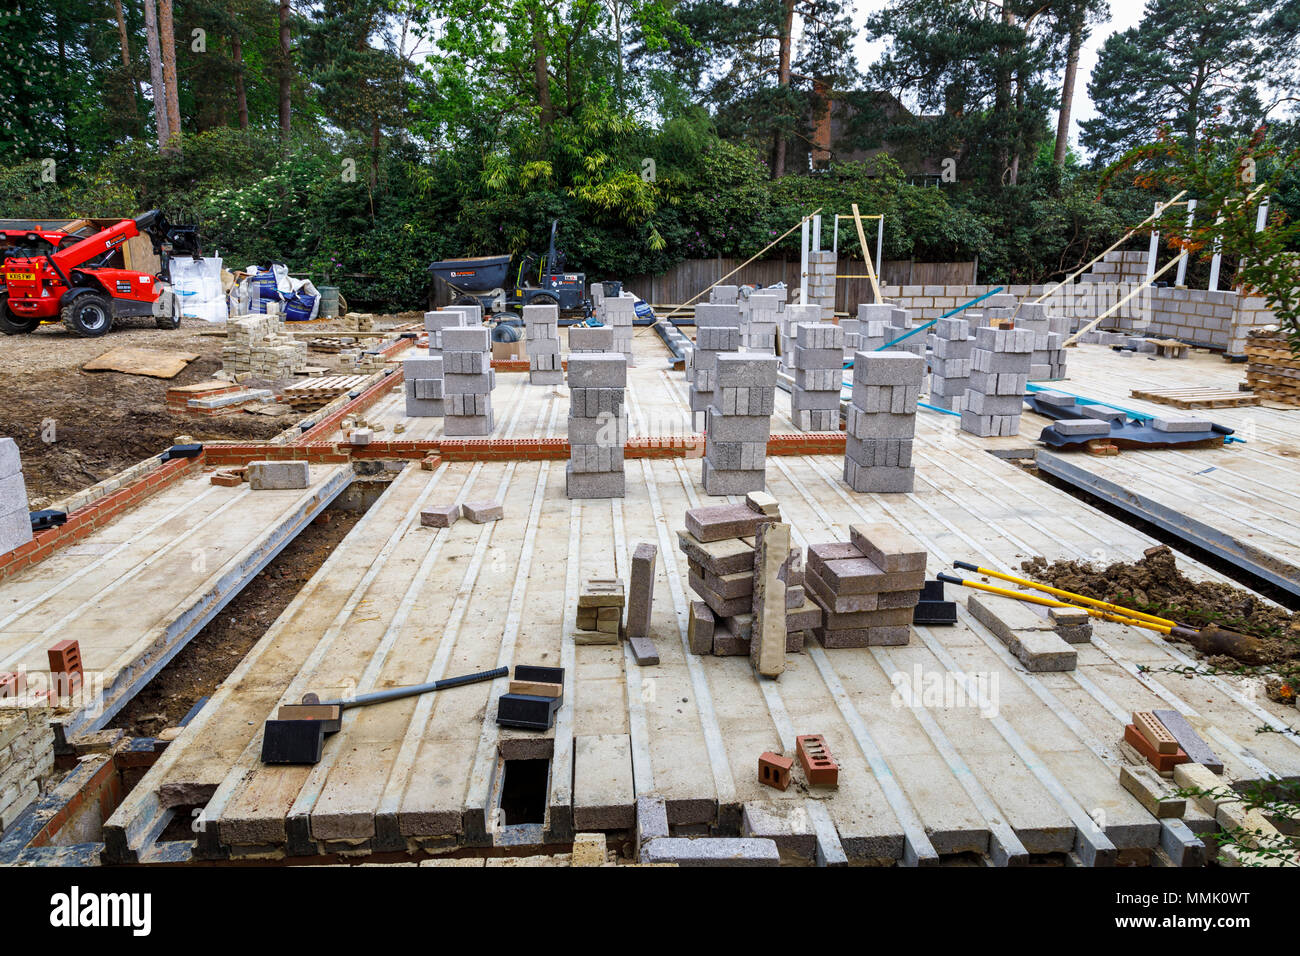 Blocchi di brezza impilati sul pavimento di una nuova casa in costruzione in una zona residenziale giardino suburbano infill building site, Surrey, Inghilterra del sud-est Foto Stock